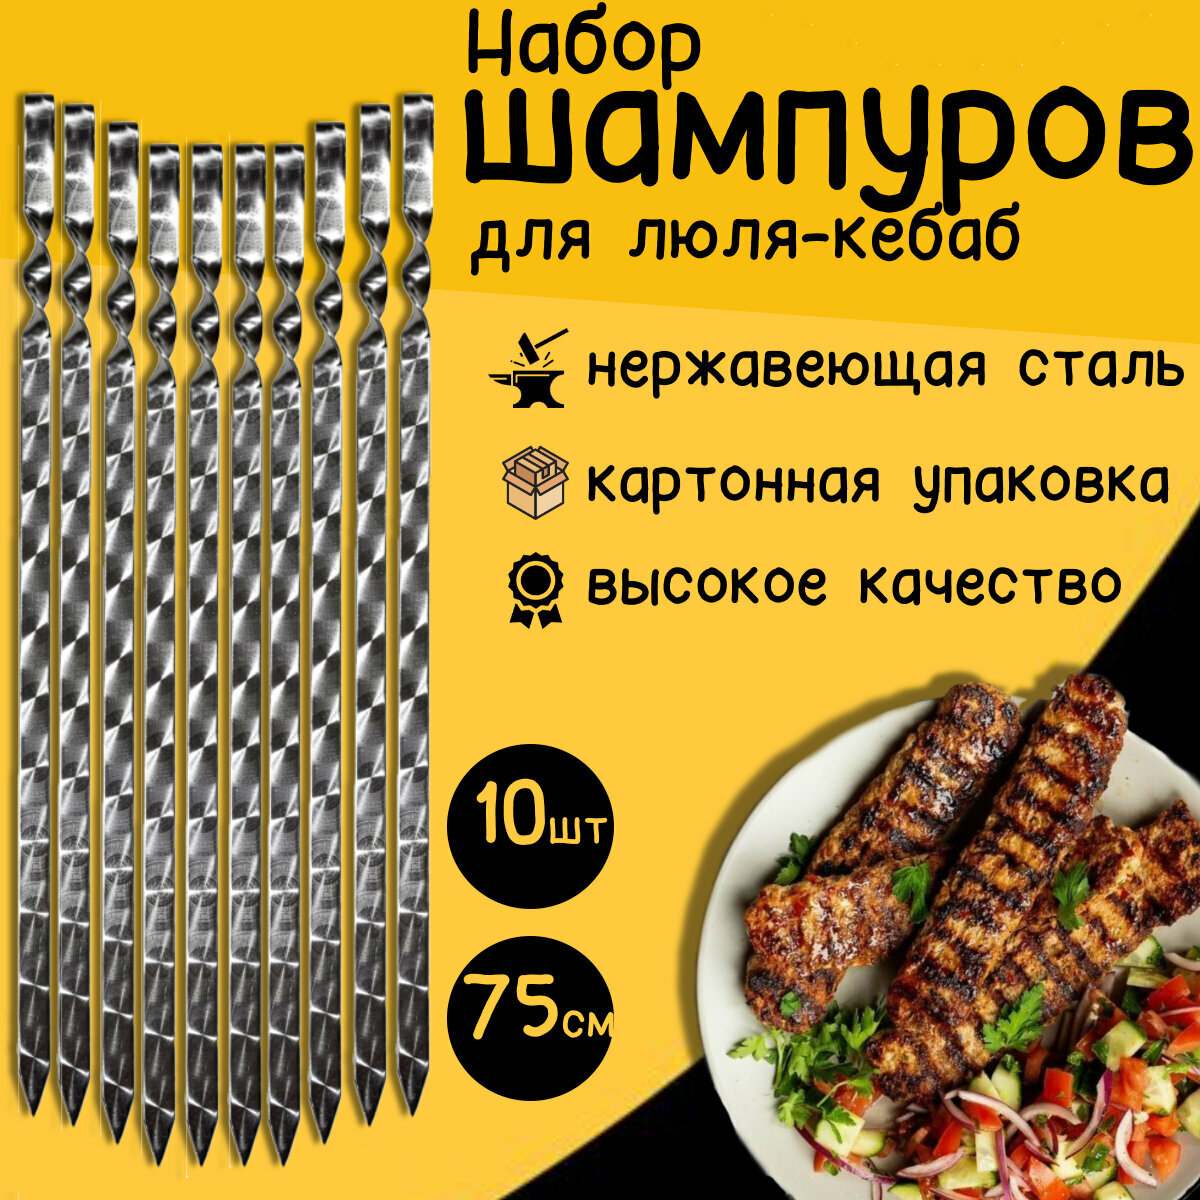 Шампуры для люля-кебаб 75 см 10 штук